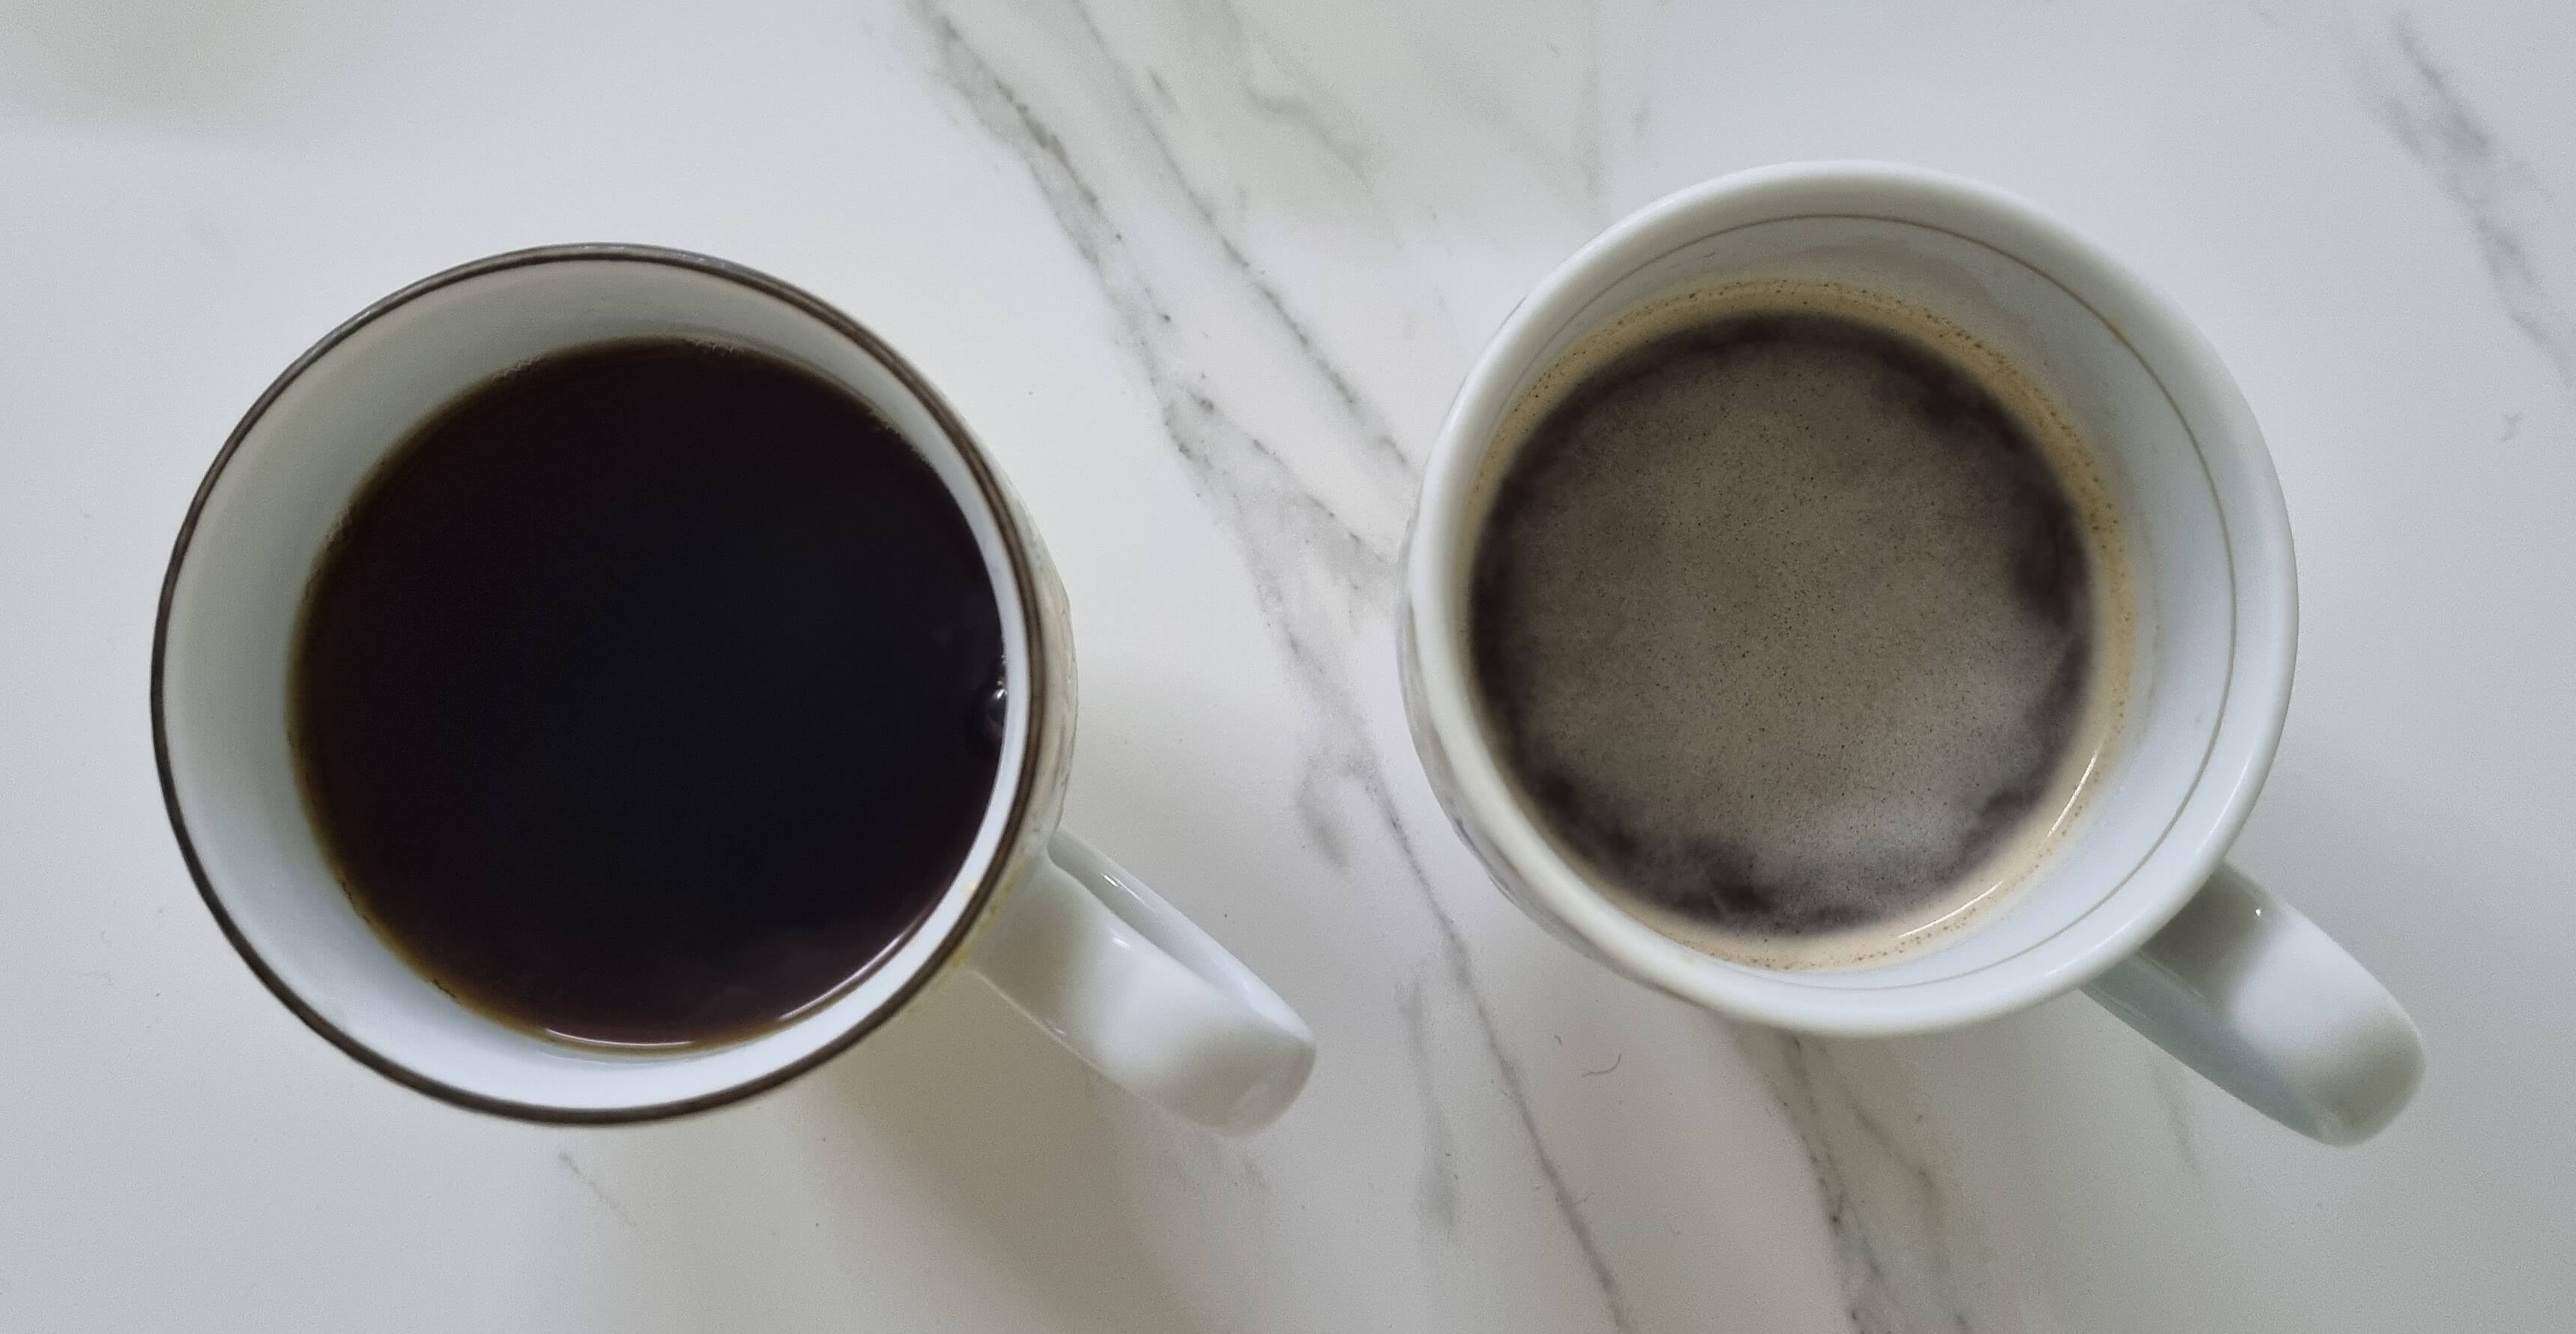 머신에서 추출한 커피를 비교하는 사진입니다. 하리오 필터를 사용하여 깔끔한 커피(왼쪽)와 필터를 사용하지 않아 크레마가 남아 있는 커피(오른쪽)를 비교할 수 있습니다.